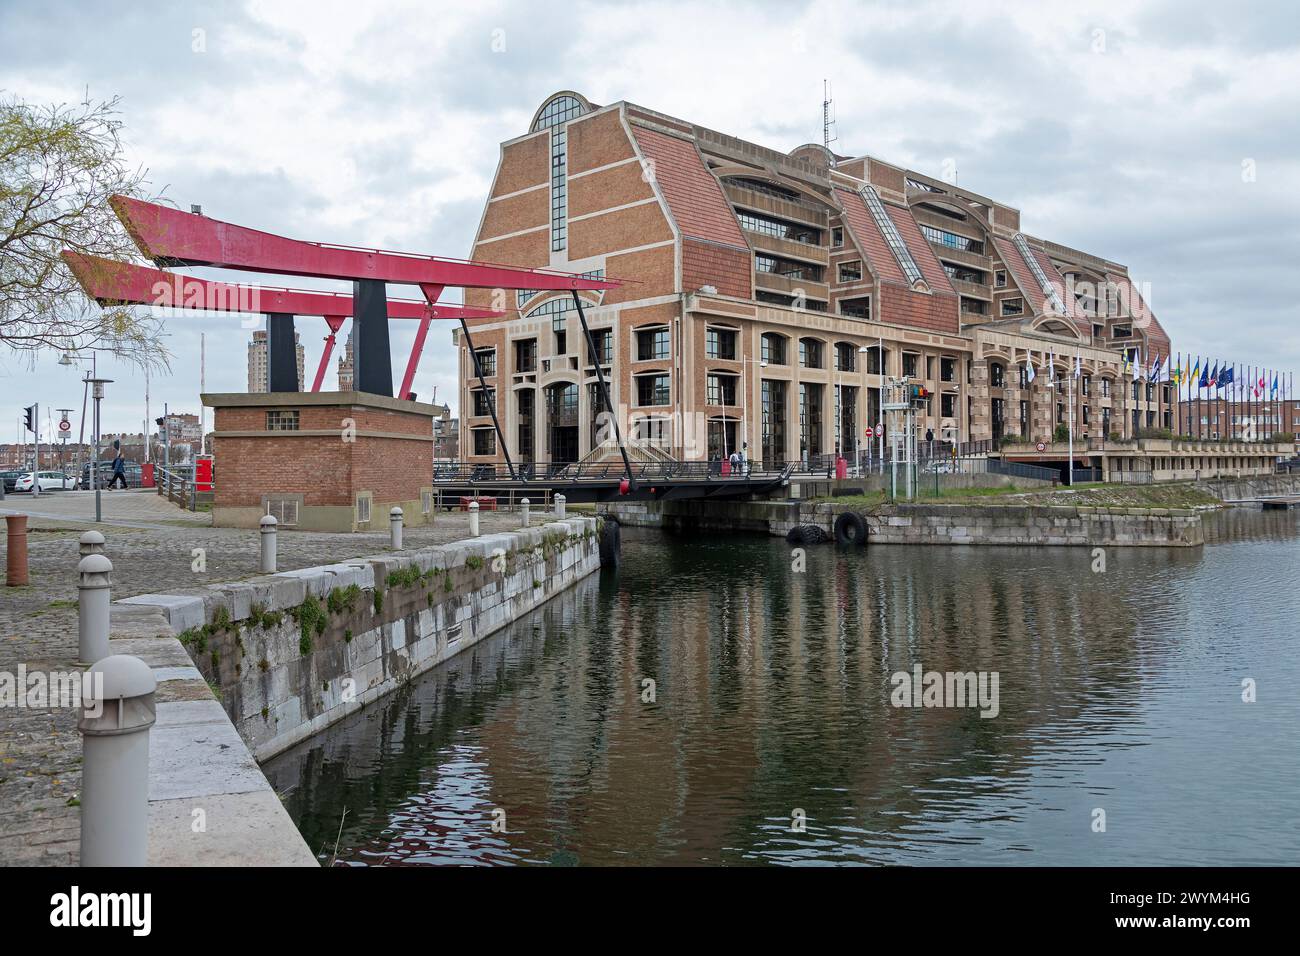 Communauté Urbaine de Dunkerque, building, harbour, Dunkerque, Département Nord, France Stock Photo